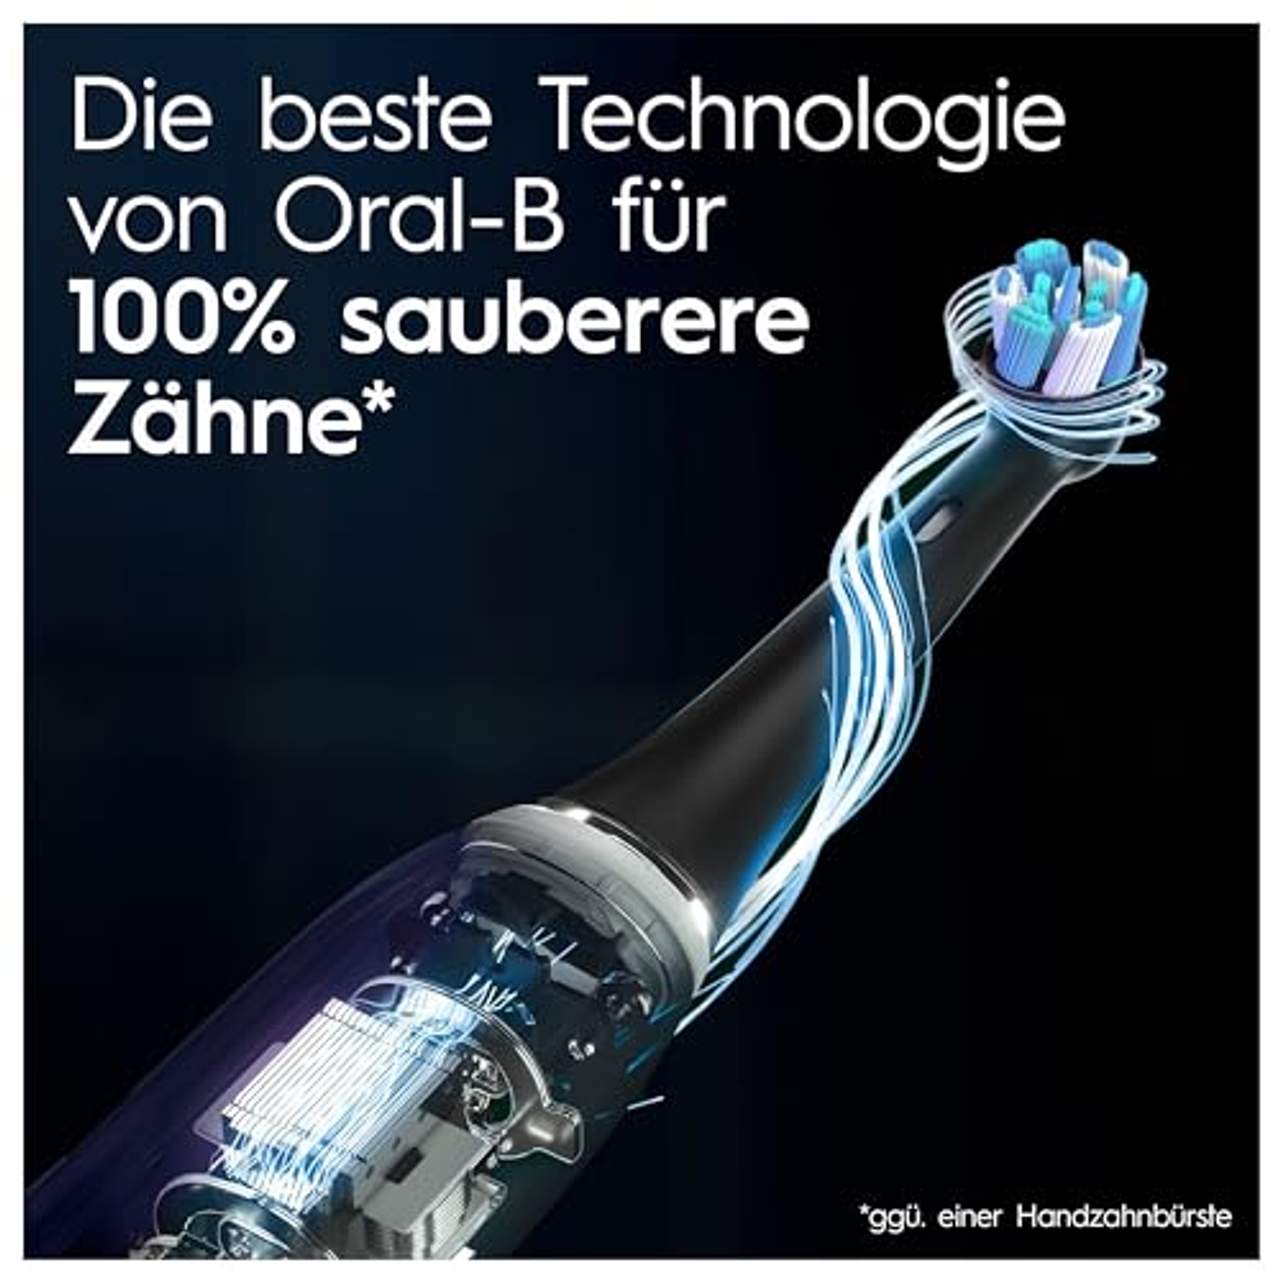 Oral-B iO Series 10 Elektrische Zahnbürste